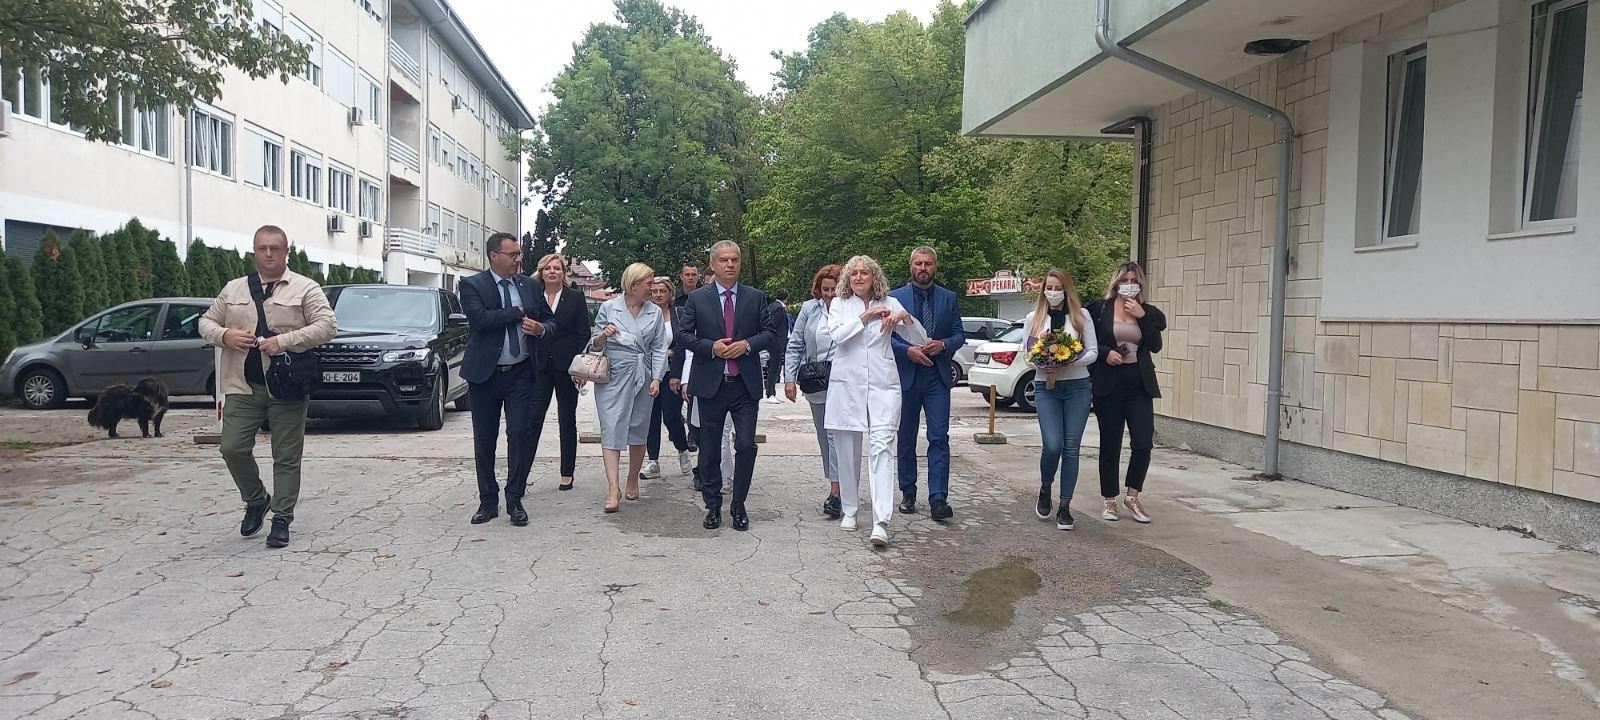 SBB počeo kampanju posjetom porodilištu u Bihaću - Avaz